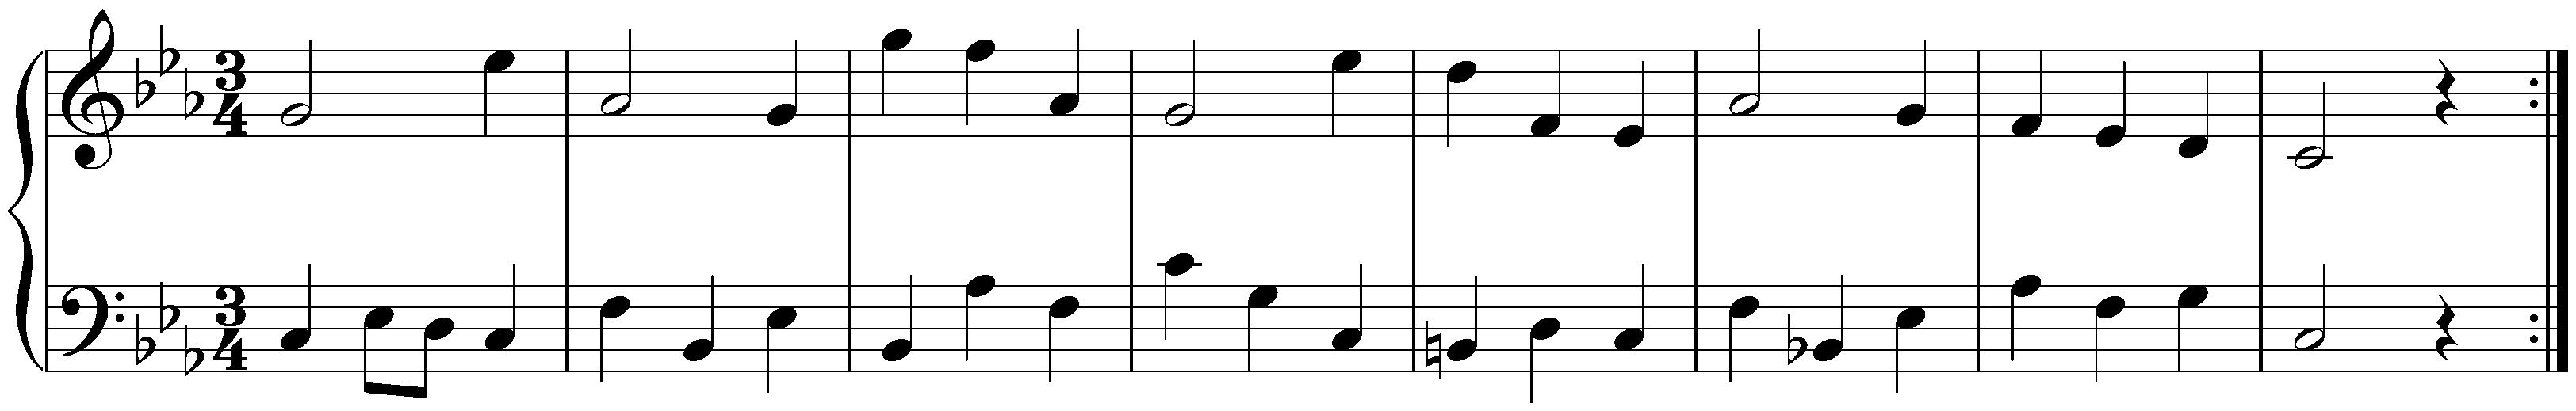 Partita in C minor, HWV 444; 5. Menuet